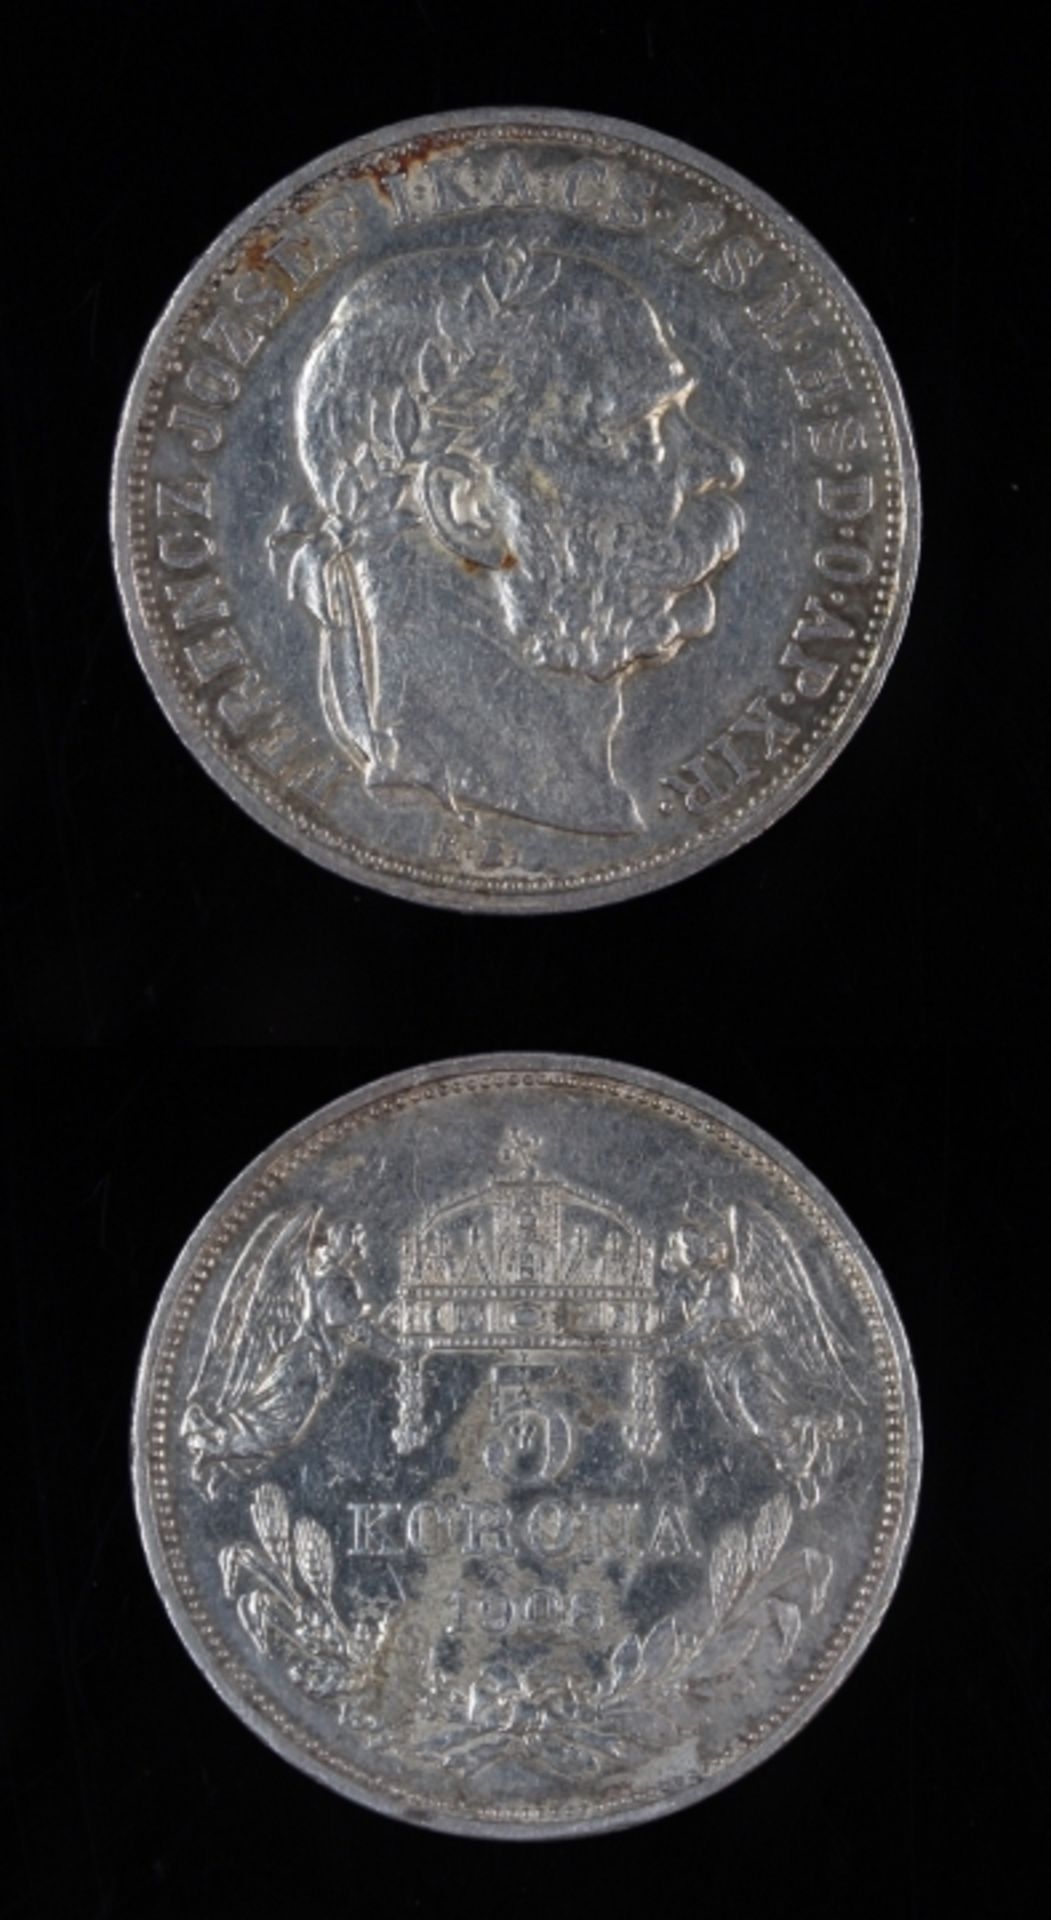 Silbermünze - Österreich 1908 5 Kronen über Kornähren, Kaiserliche Kronen von 2 schwebenden Engeln